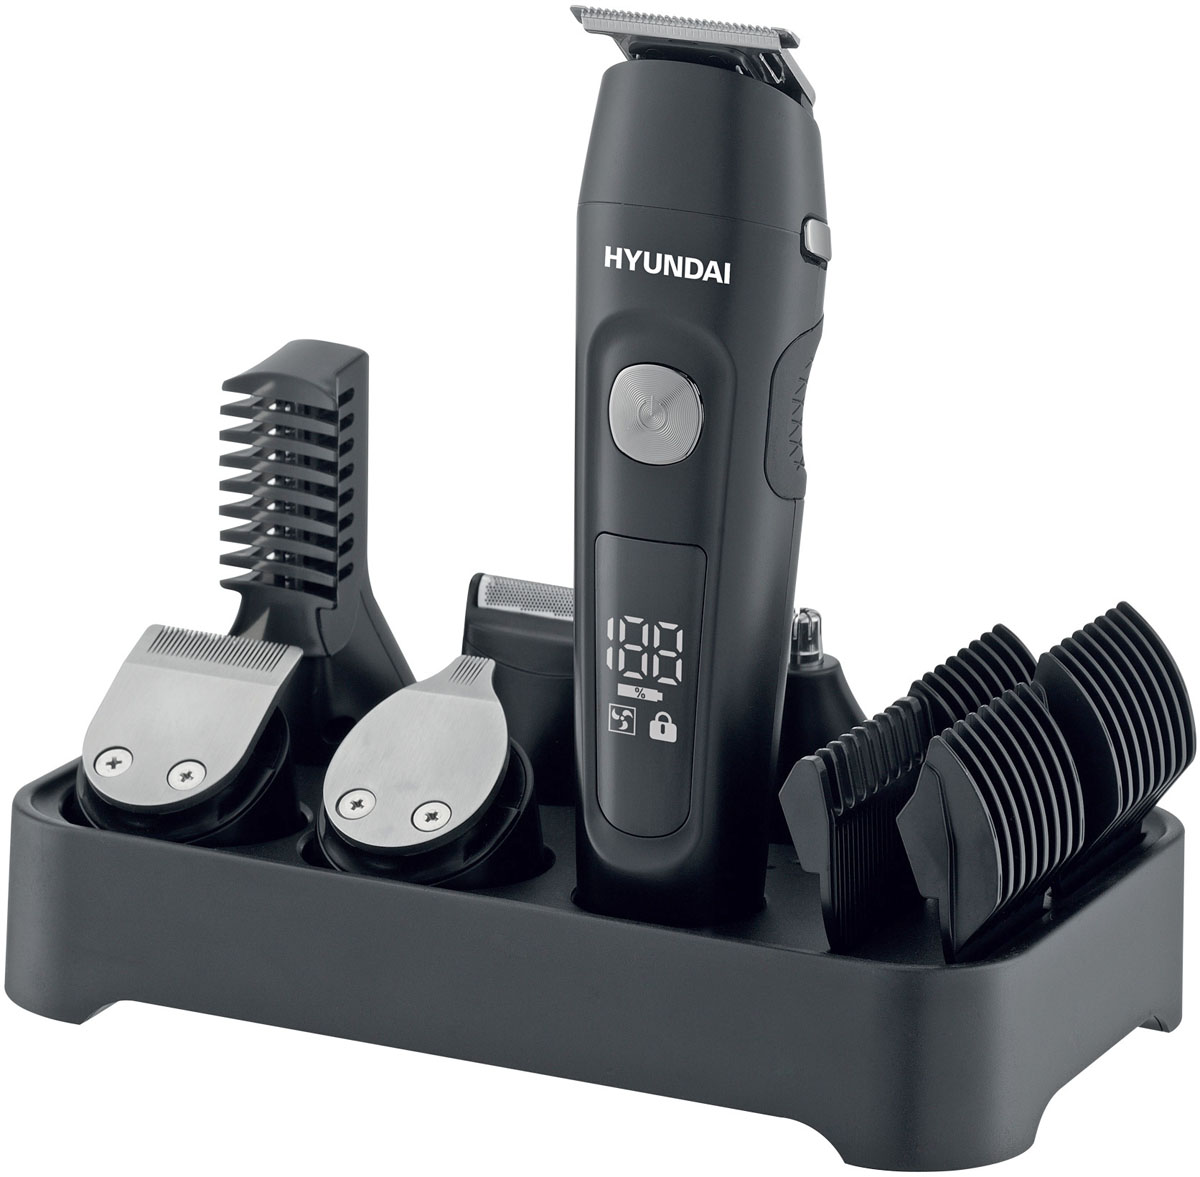 Машинка для стрижки волос HYUNDAI H-HC7120 аккумулятор 0,6 Ah, дисплей заряда, 5 сменных инструментов, 2 скорости,